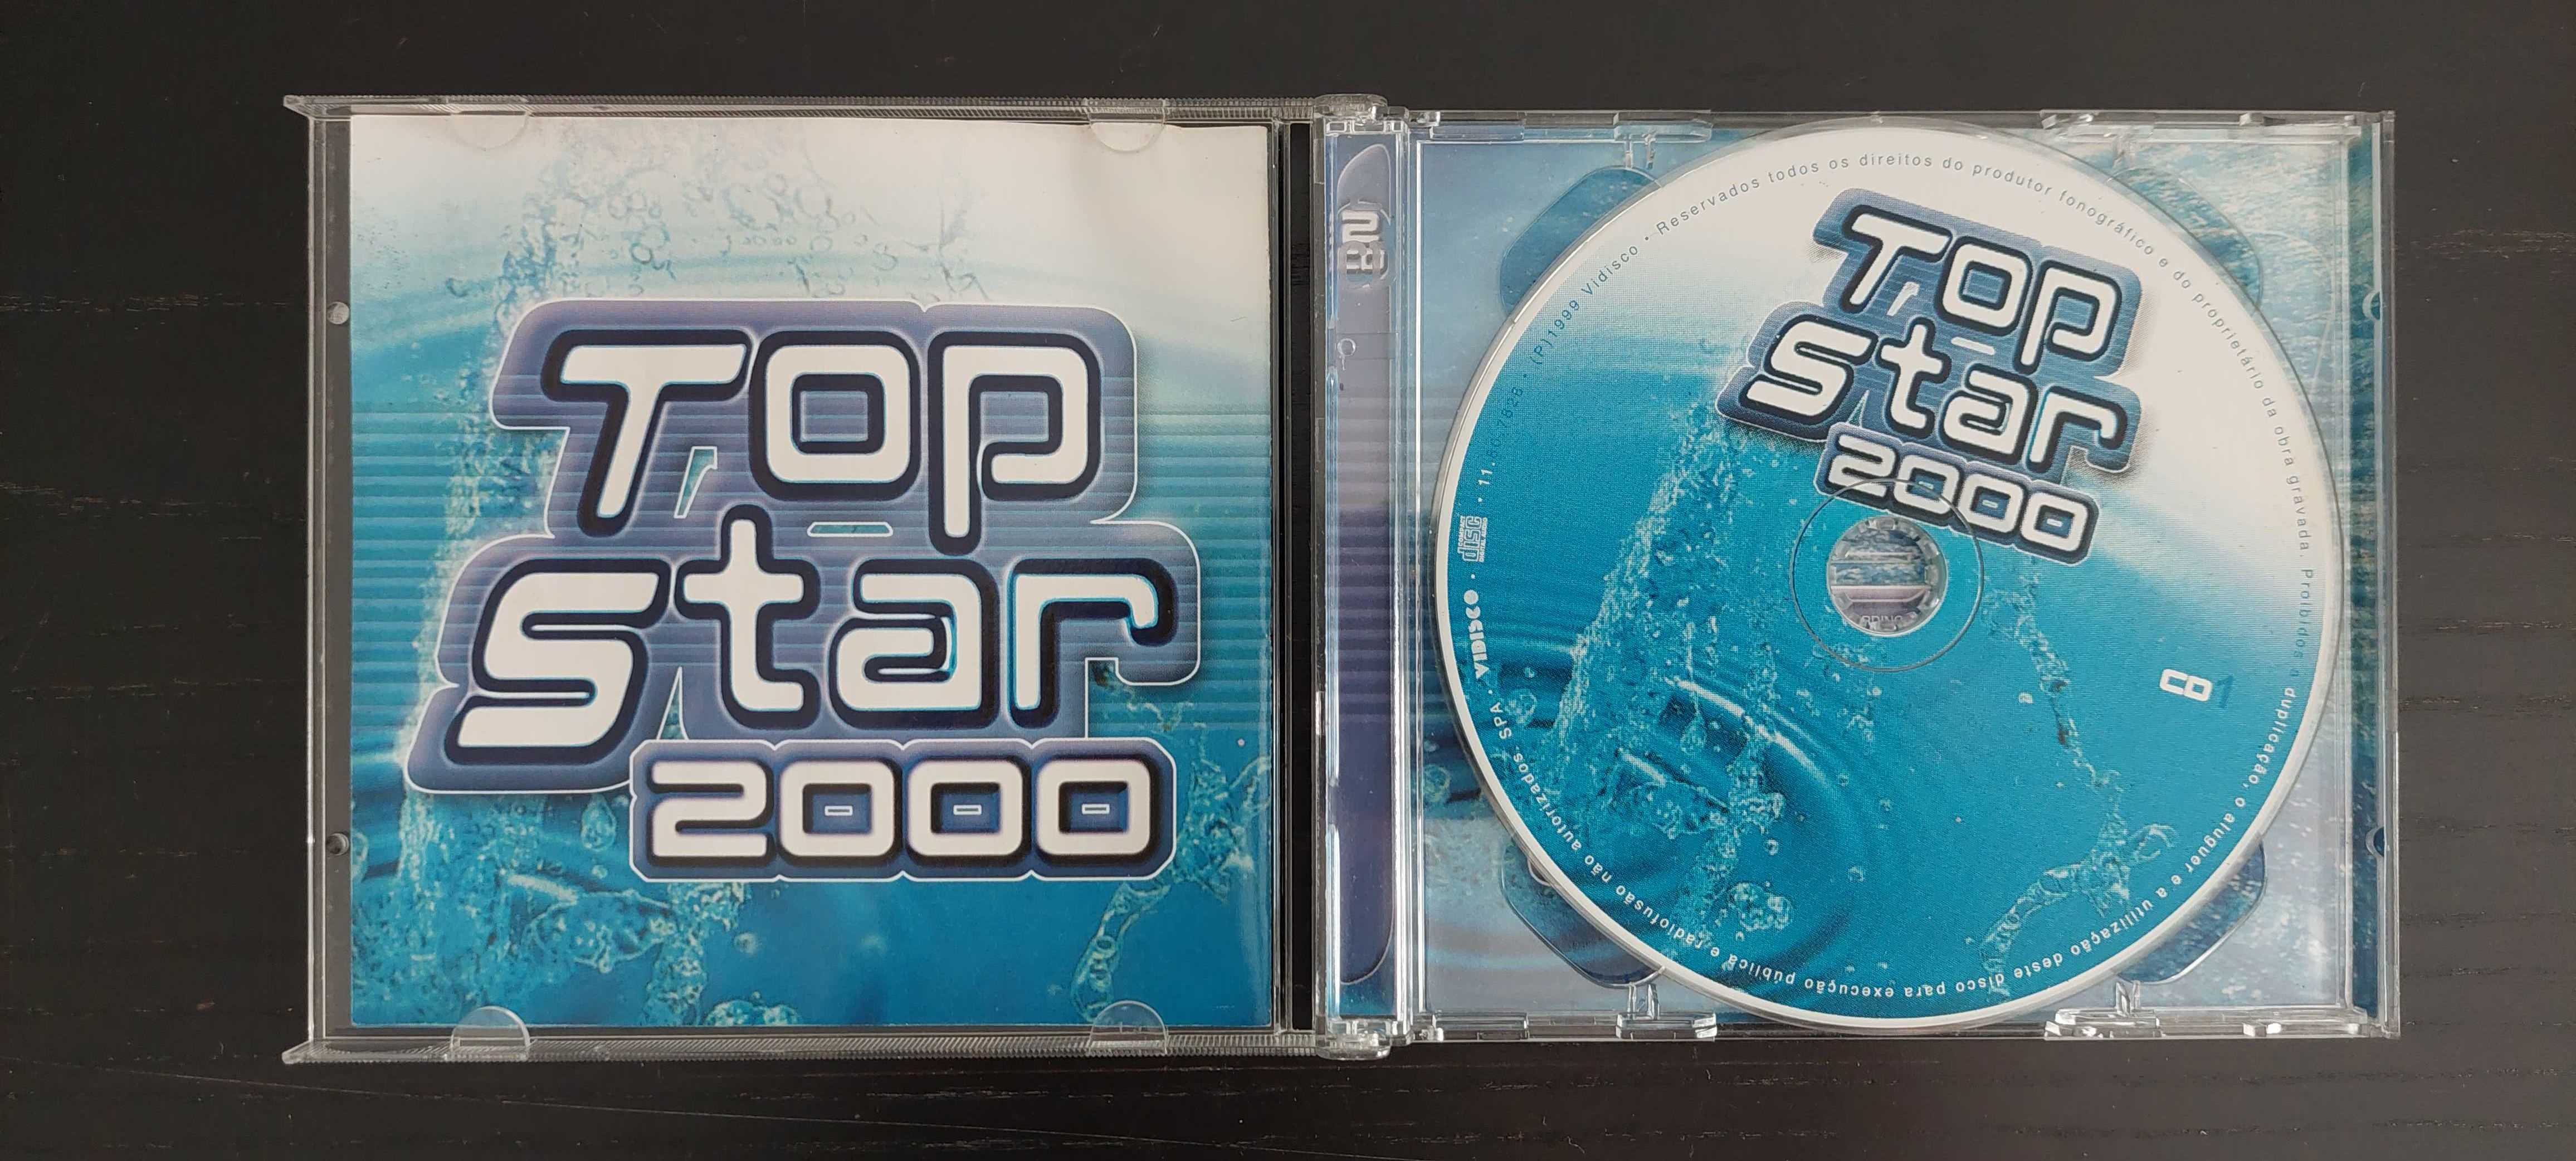 CD Original Top star 2000